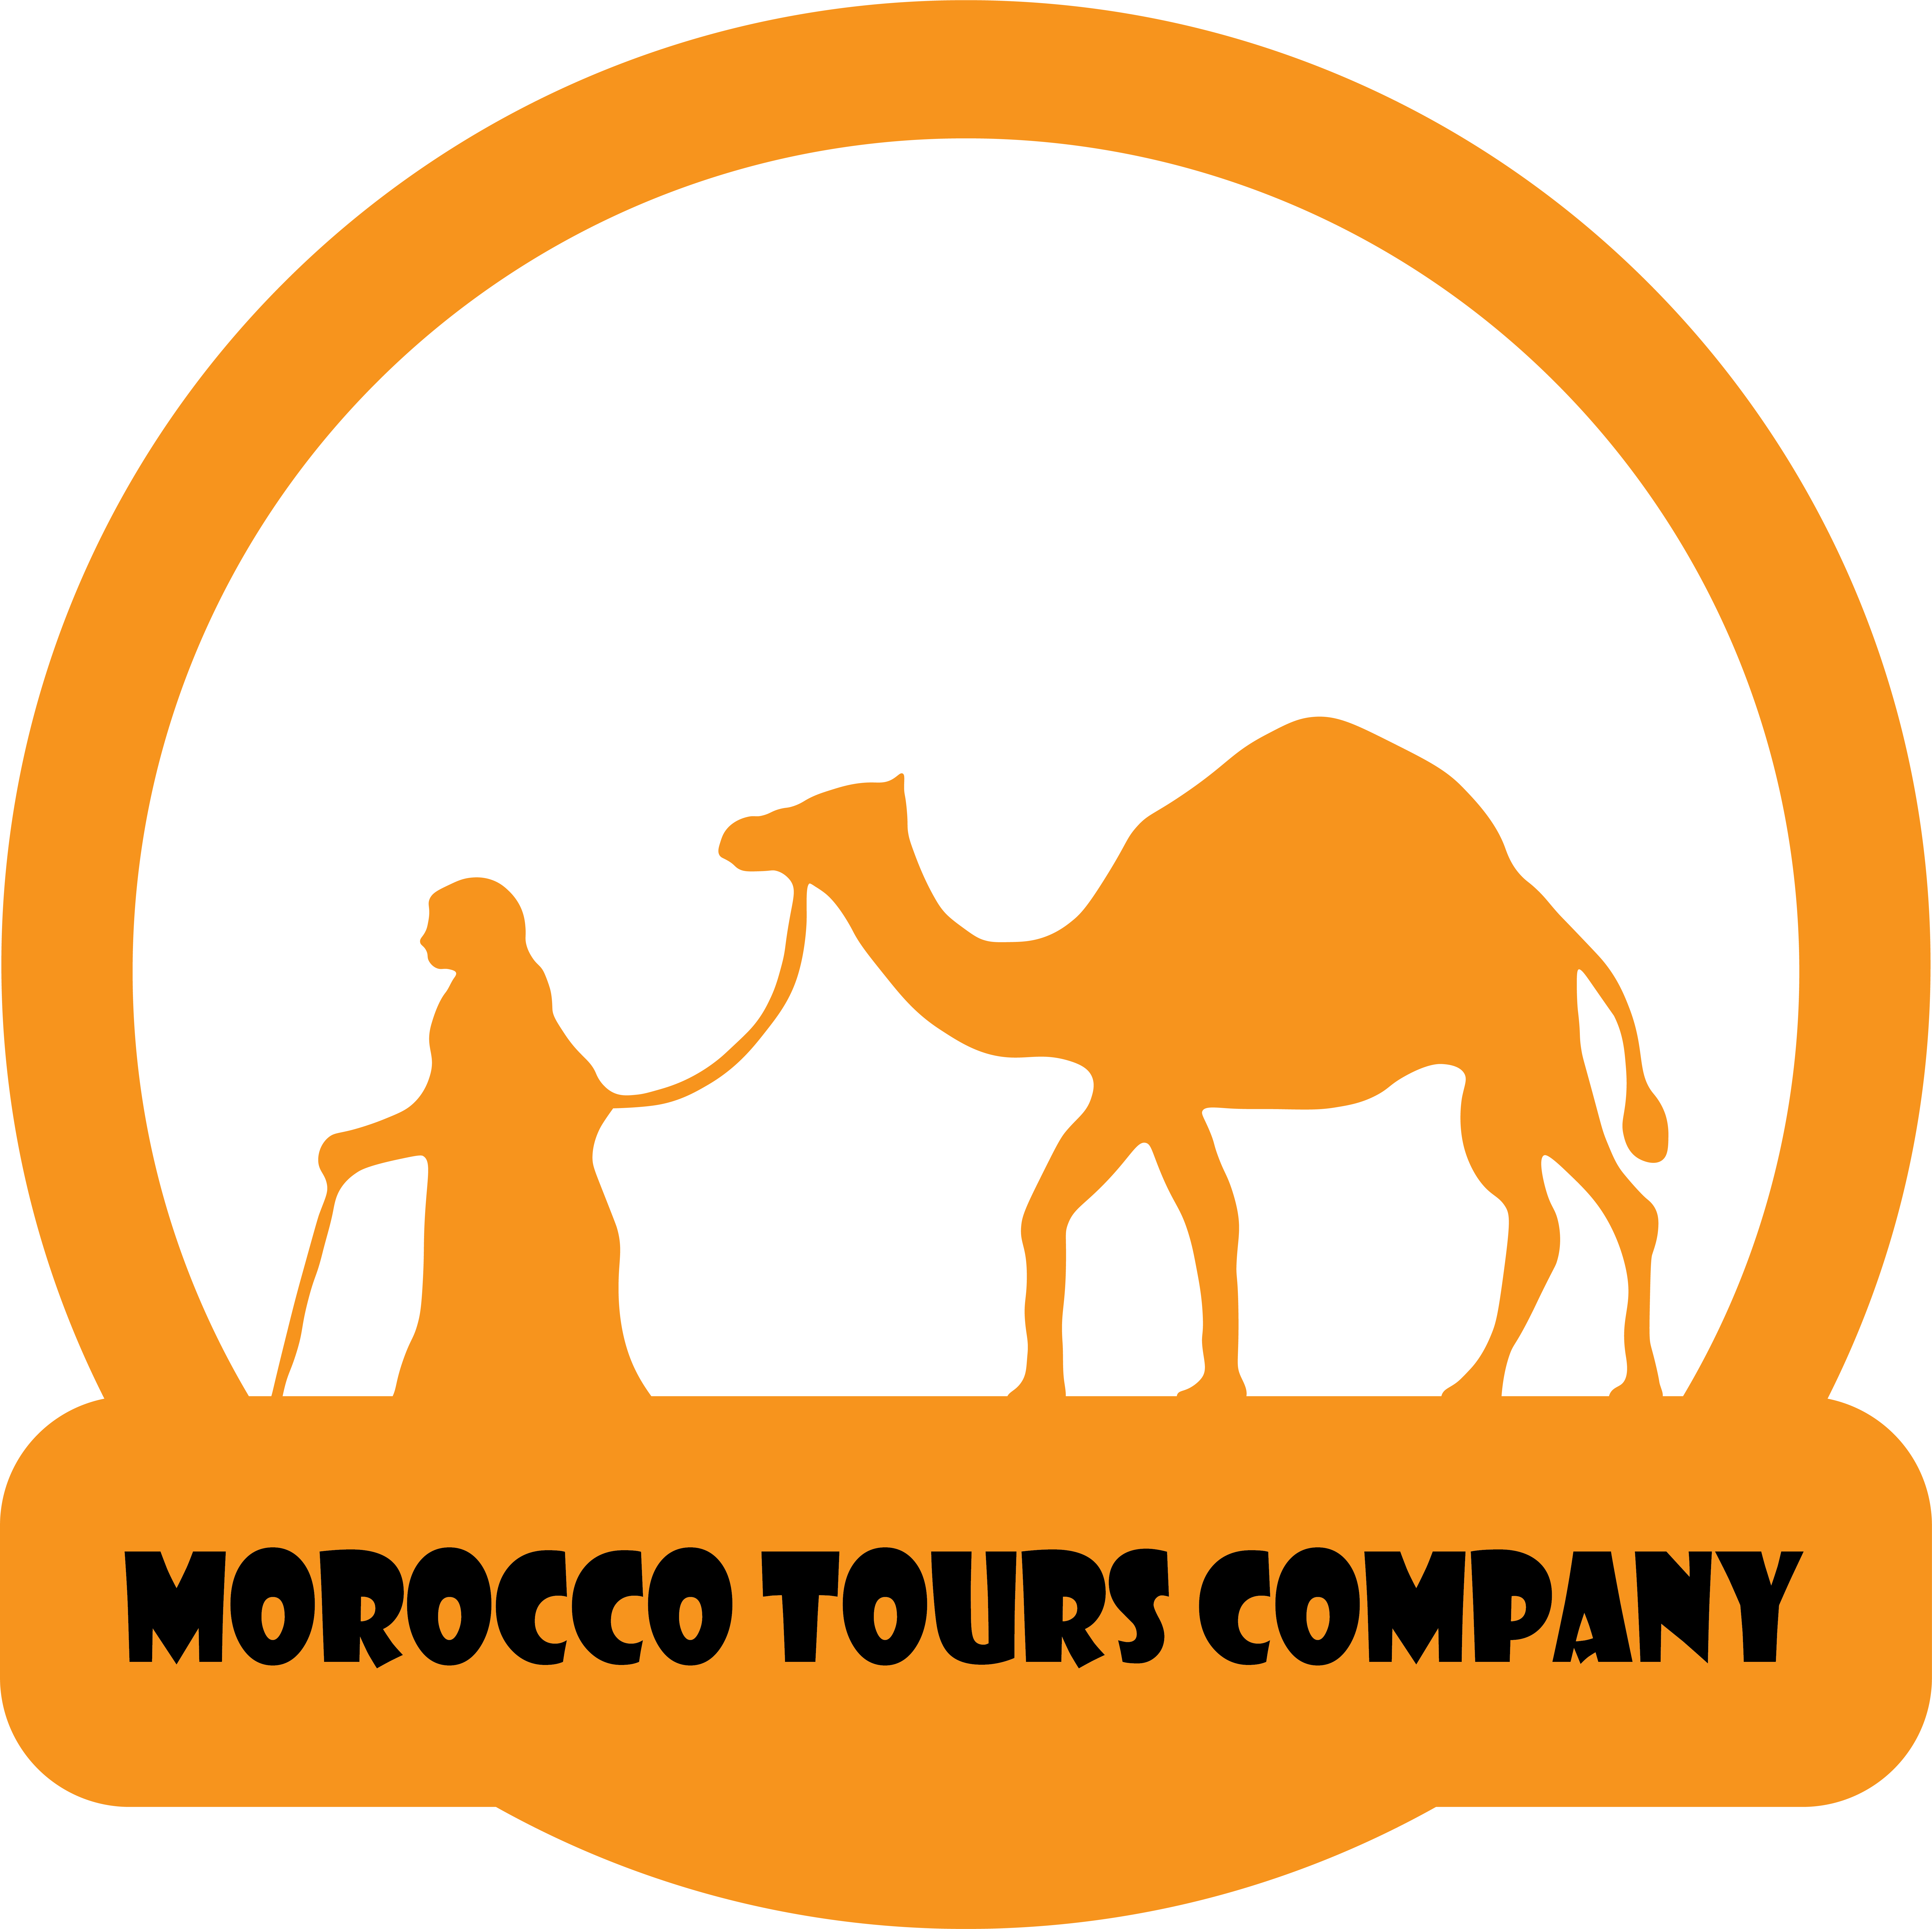 Morocco tours company